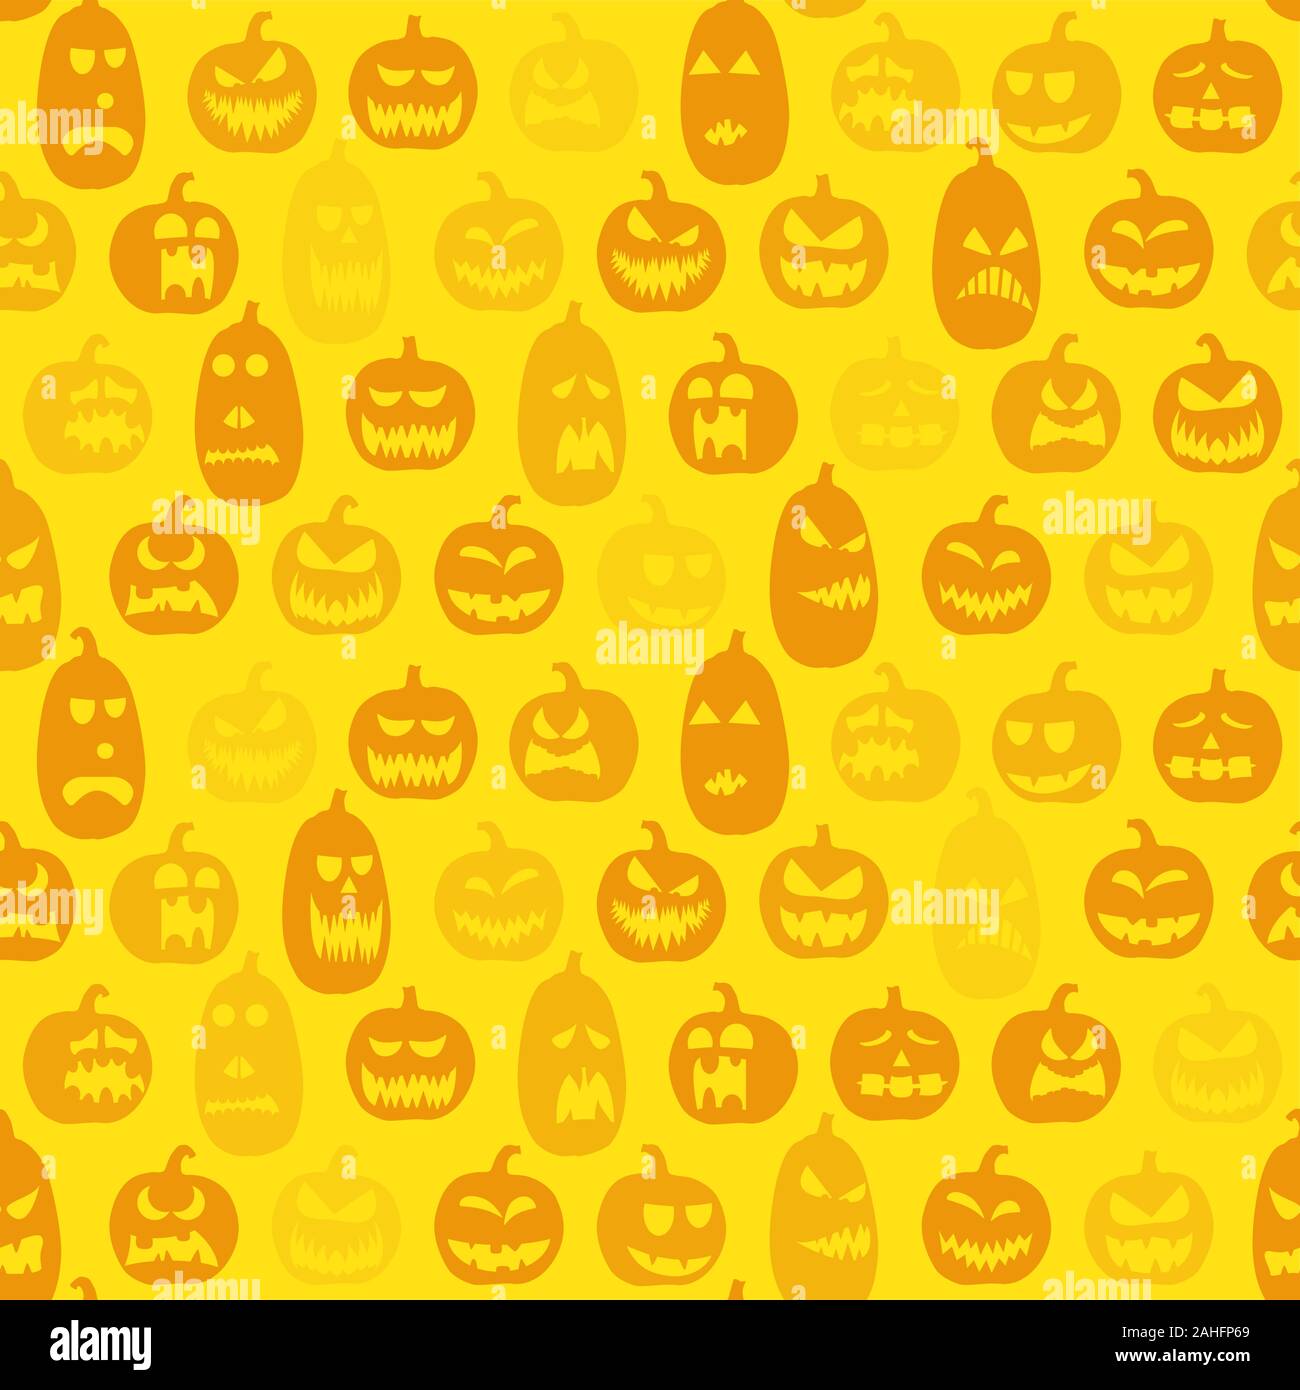 Scarry seamless background avec différents modèles de citrouilles pour l'halloween Illustration de Vecteur